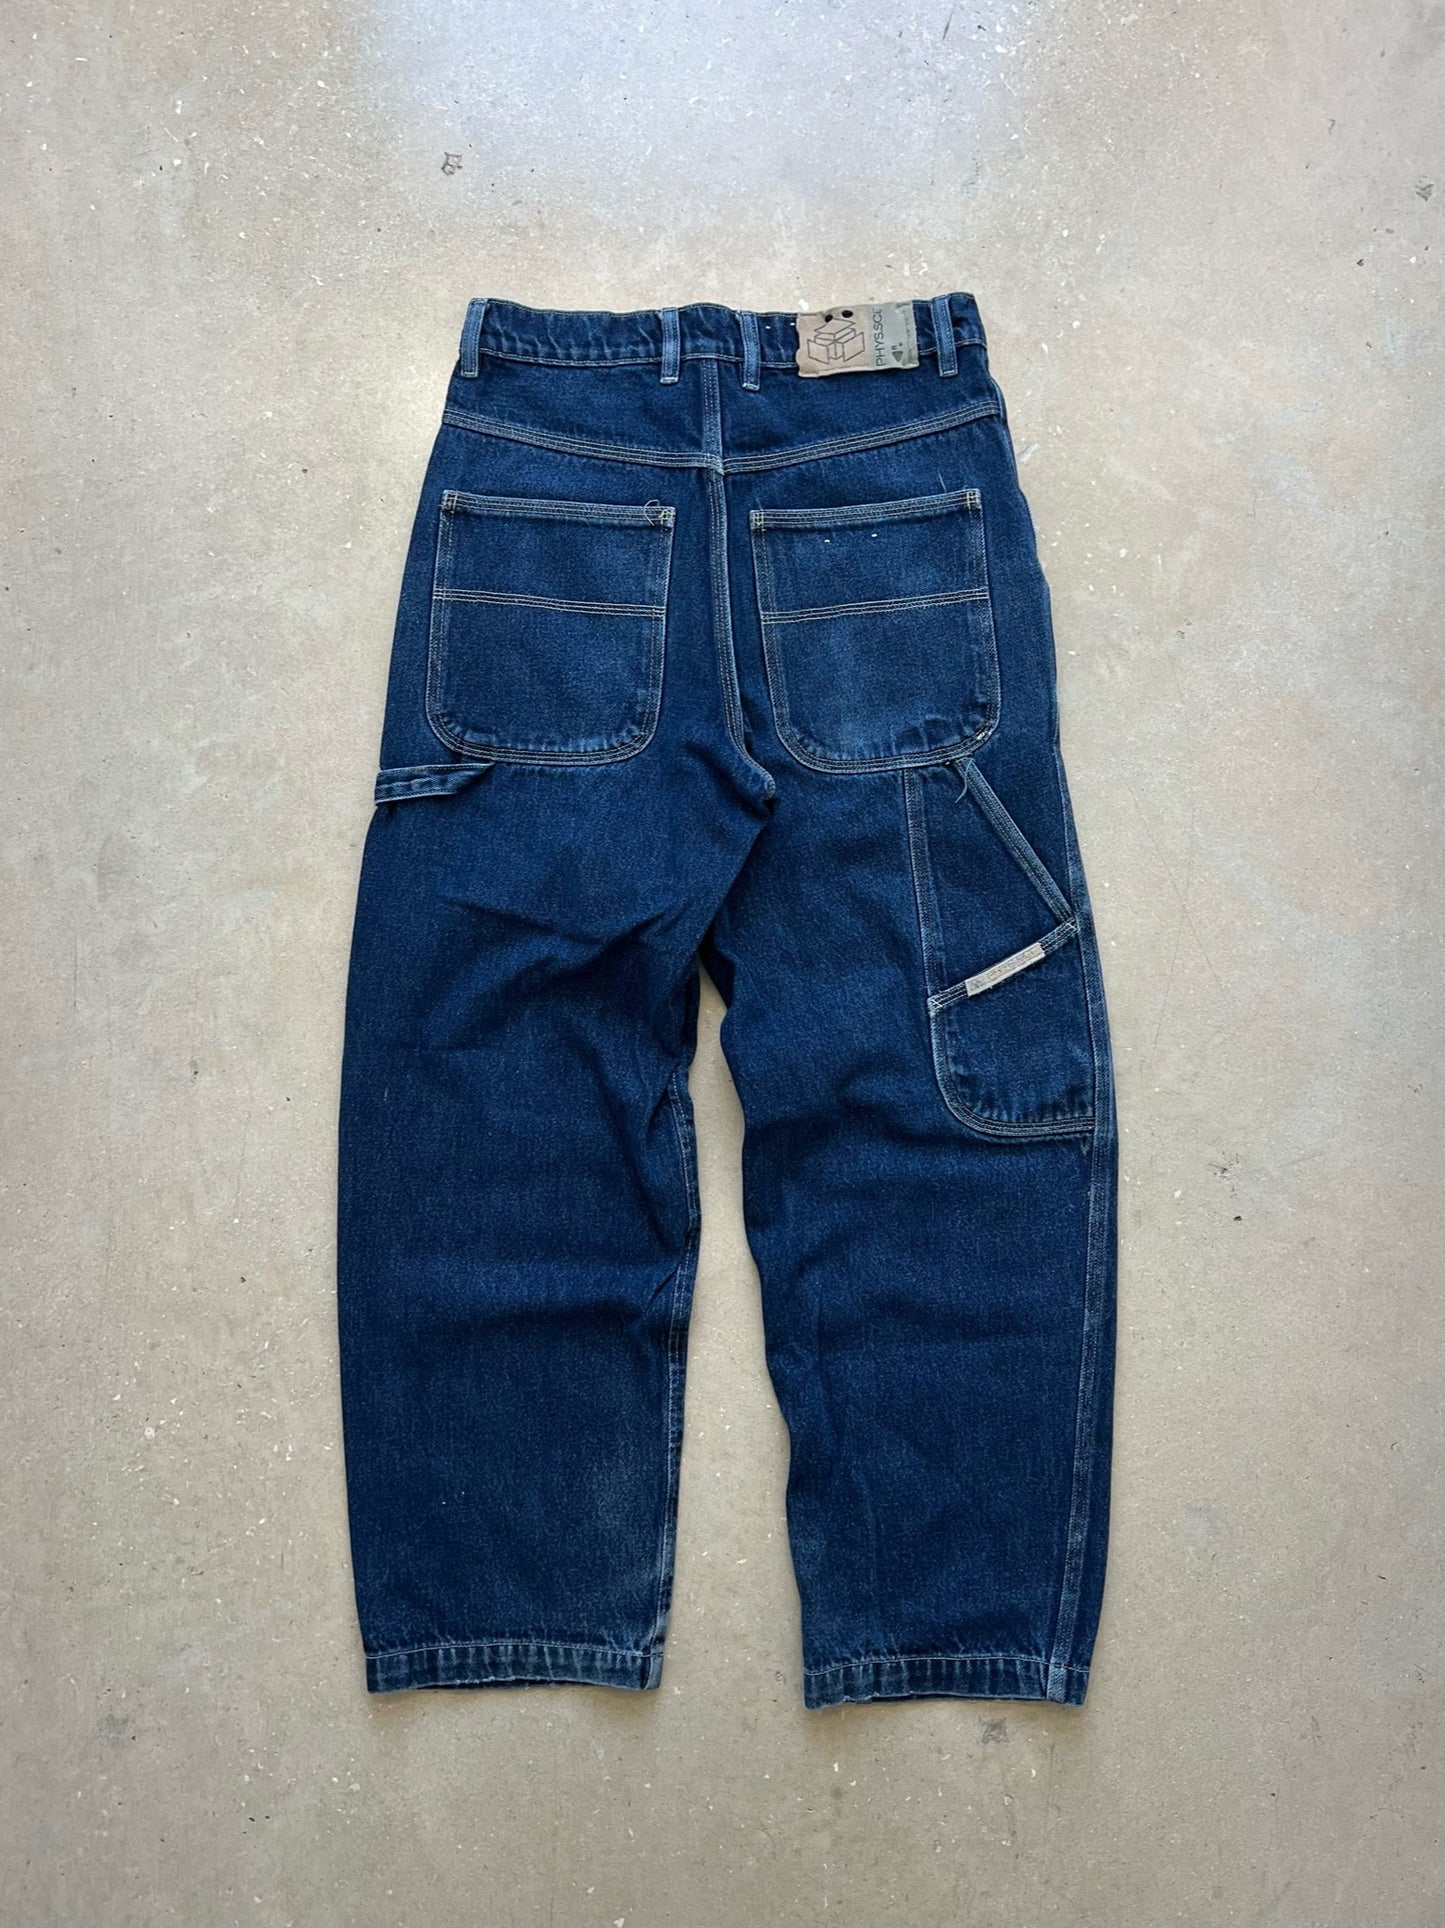 Y2K Baggy Jeans 28 x 30